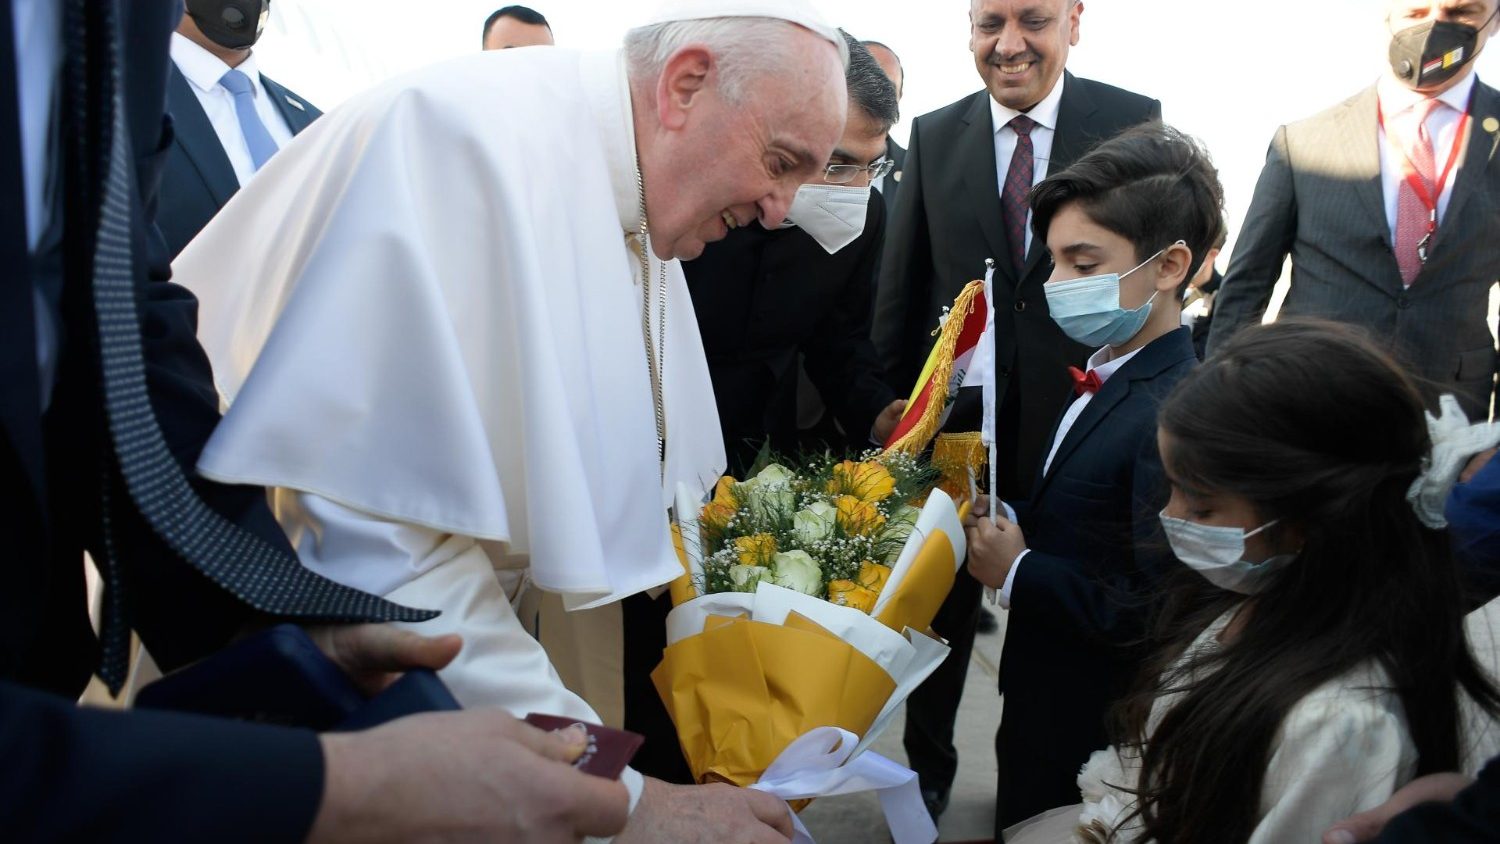 Speciale Tg1: Il viaggio di Papa Francesco in Iraq, in un documentario